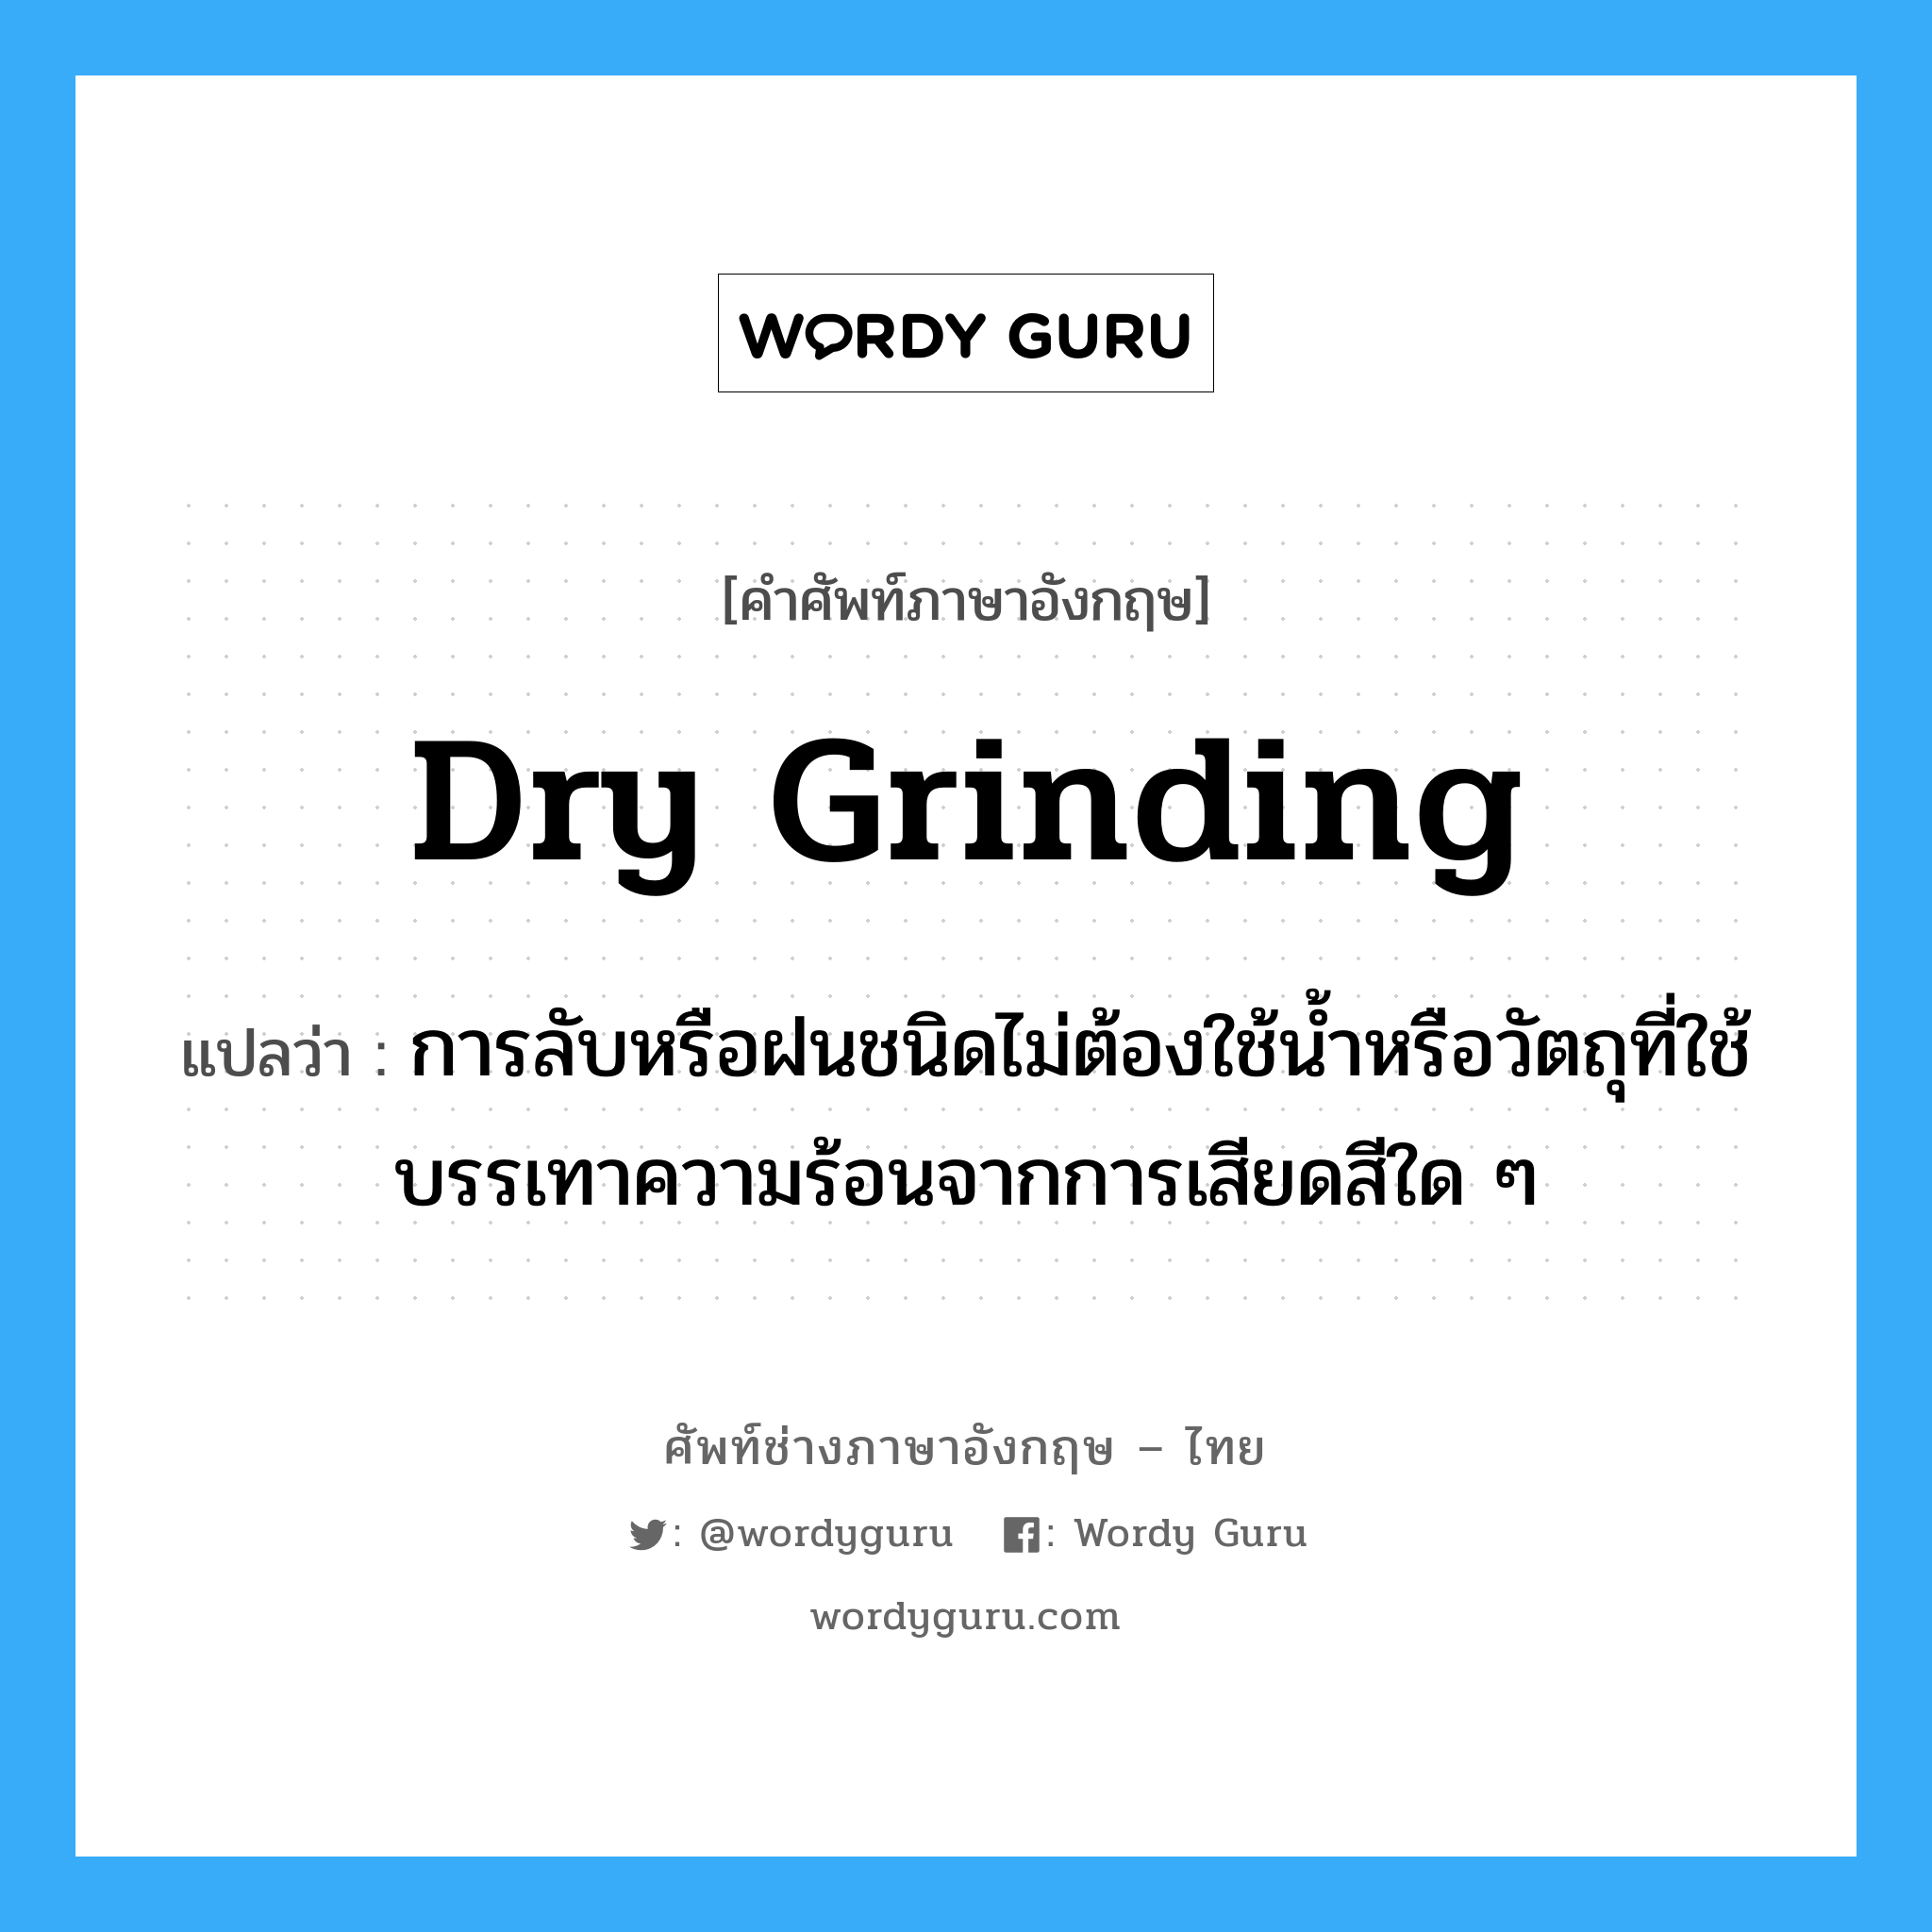 dry grinding แปลว่า?, คำศัพท์ช่างภาษาอังกฤษ - ไทย dry grinding คำศัพท์ภาษาอังกฤษ dry grinding แปลว่า การลับหรือฝนชนิดไม่ต้องใช้น้ำหรือวัตถุที่ใช้บรรเทาความร้อนจากการเสียดสีใด ๆ